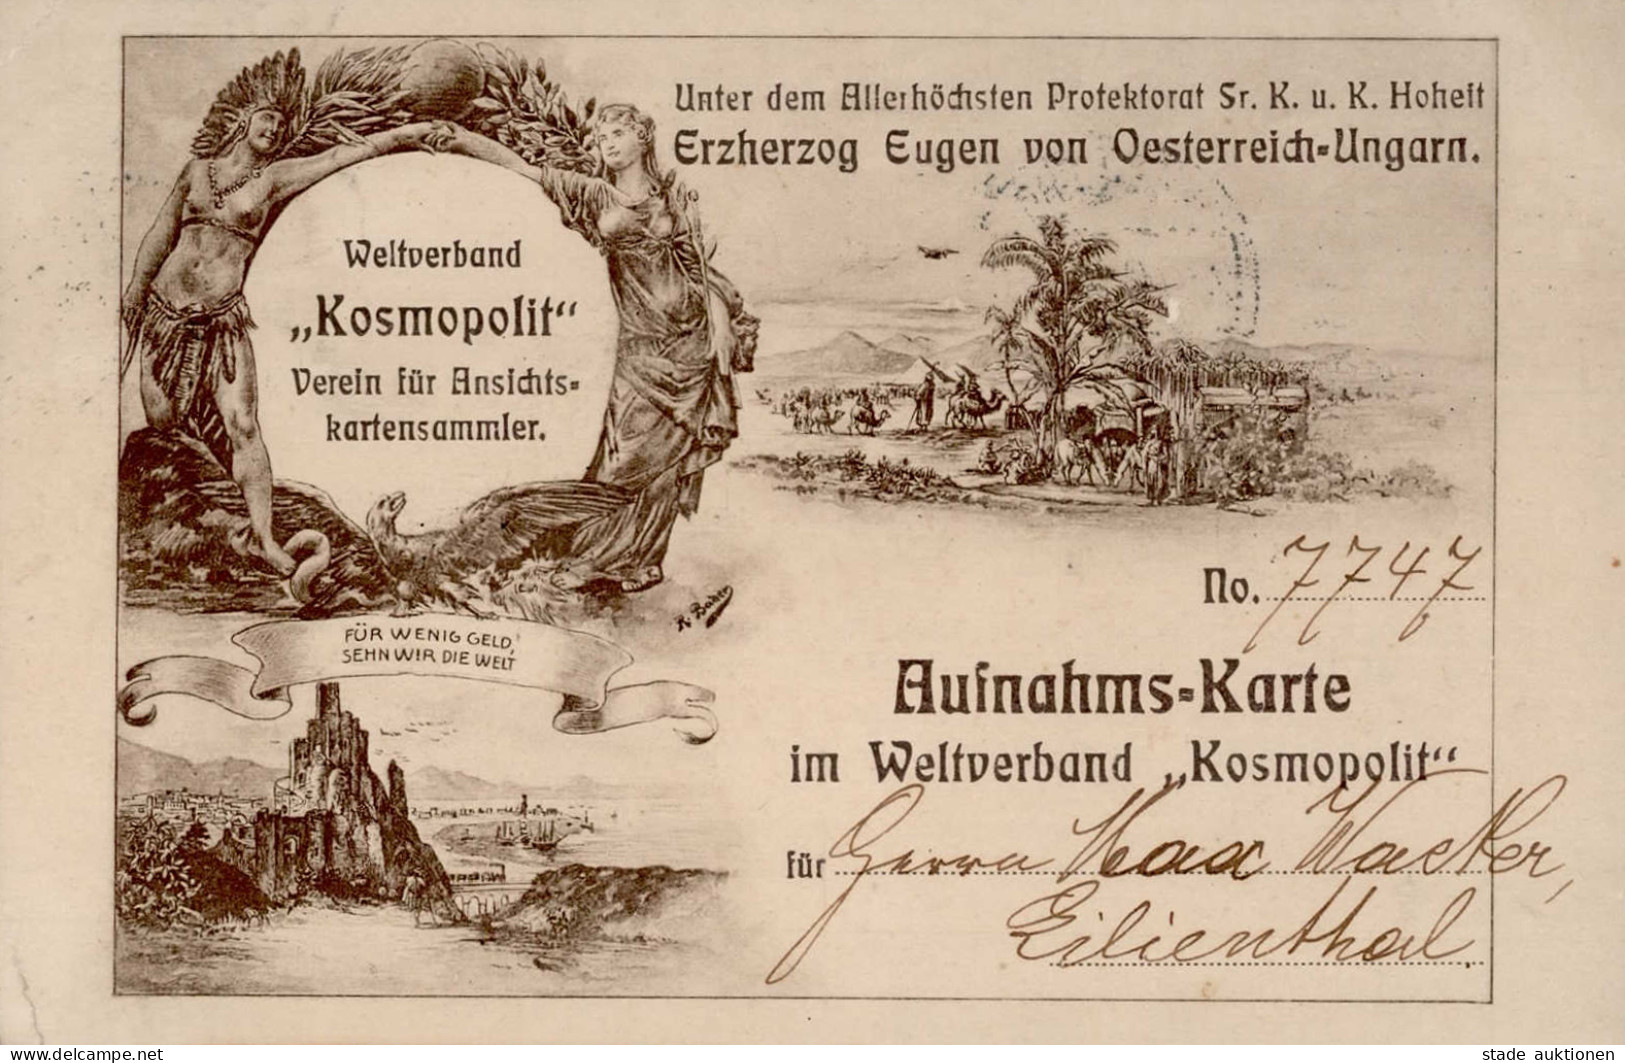 AK-Geschichte Weltverband Kosmopolit Verein Für Ansichtskartensammler Aufnahms-Karte 1909 I-II (kleine Eckbüge) - Other & Unclassified